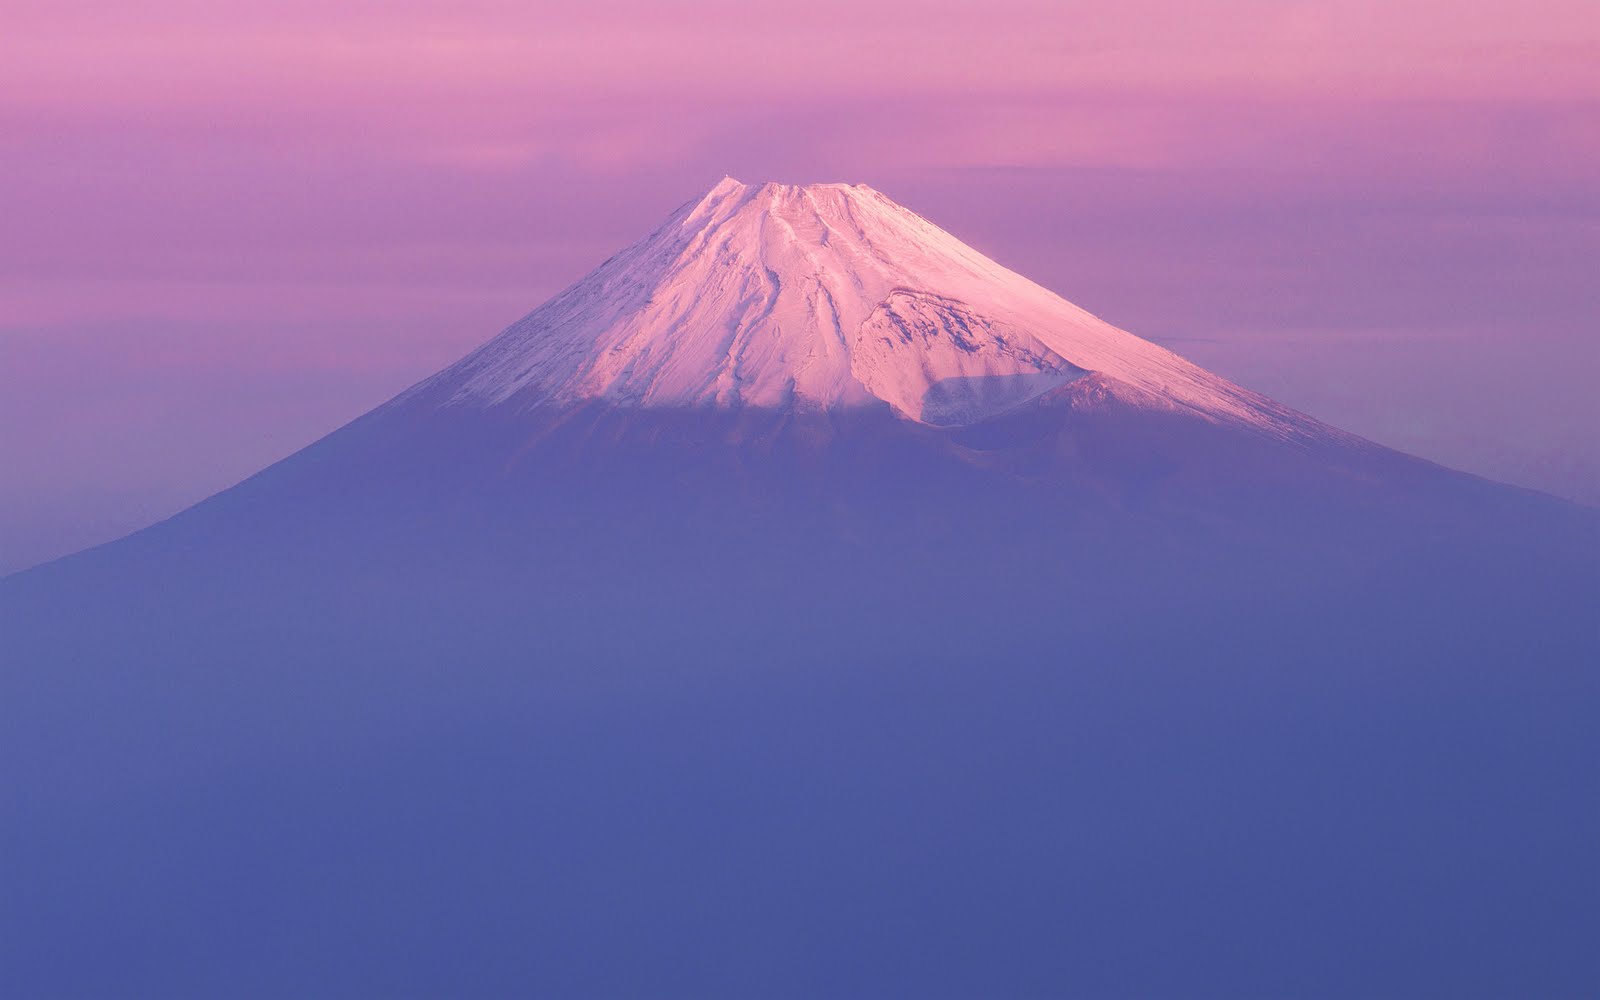 壁紙】iPhoneとiPad用Lionの富士山壁紙 | Blog!NOBON